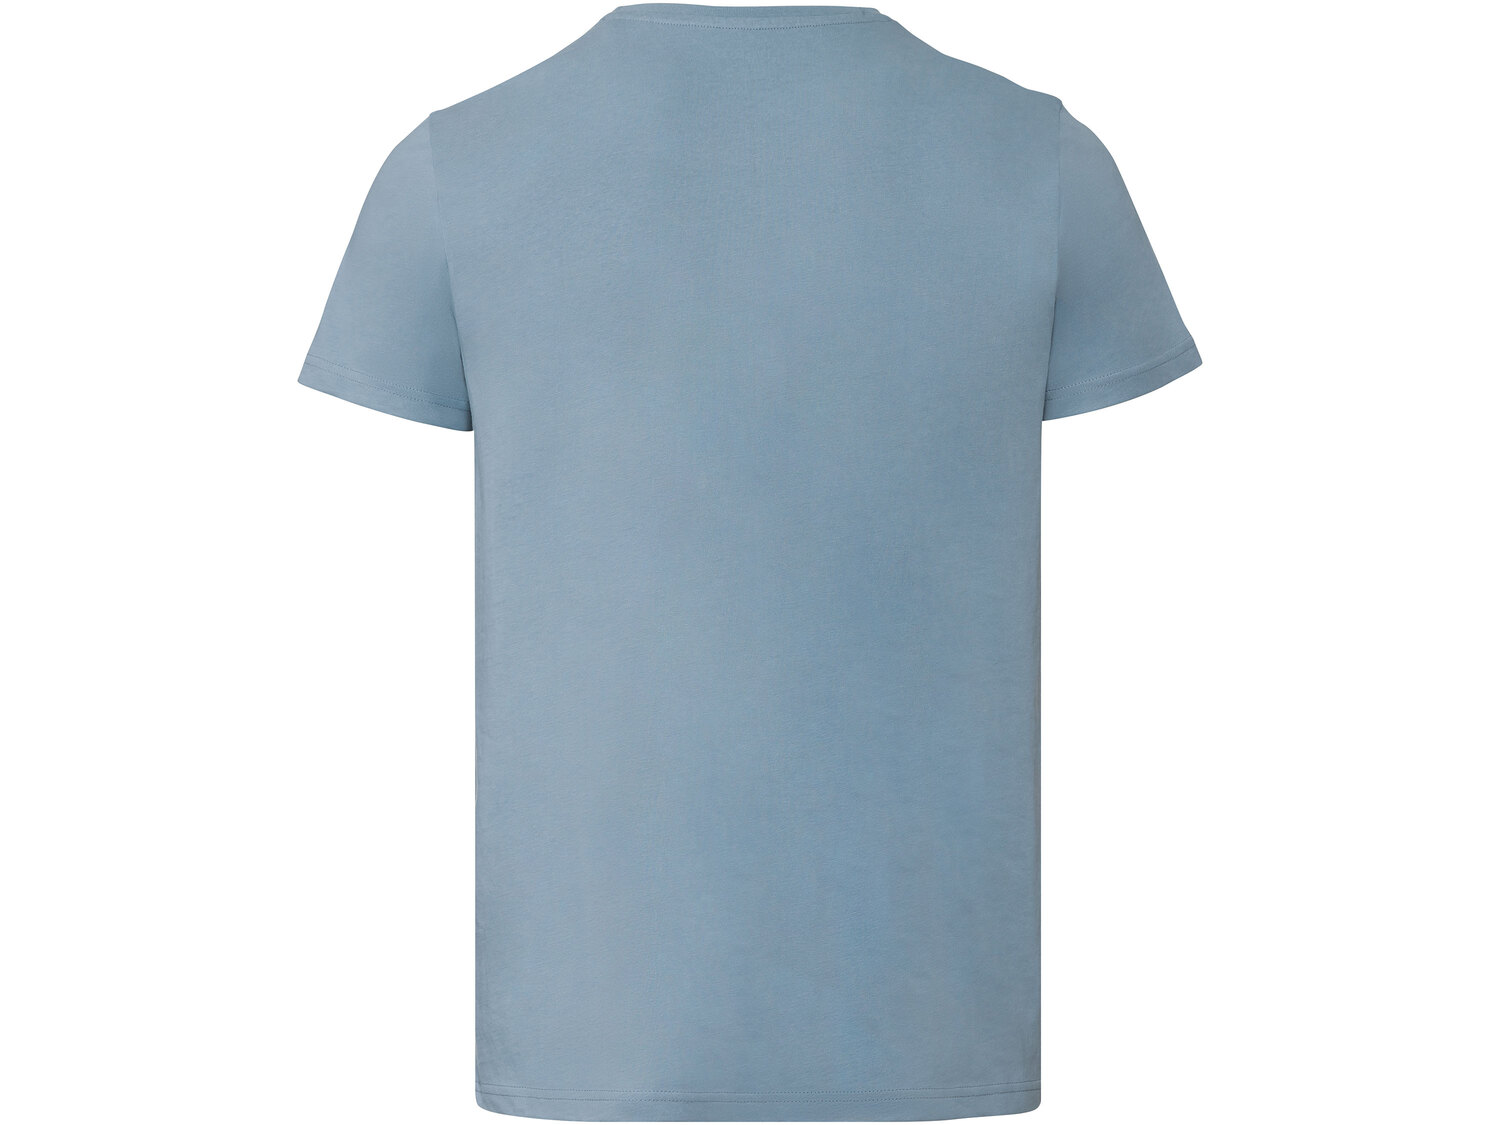 T-shirt męski , cena 14,99 PLN 
- 100% bawełny
- rozmiary: M-XL
Dostępne rozmiary

Opis

- ...